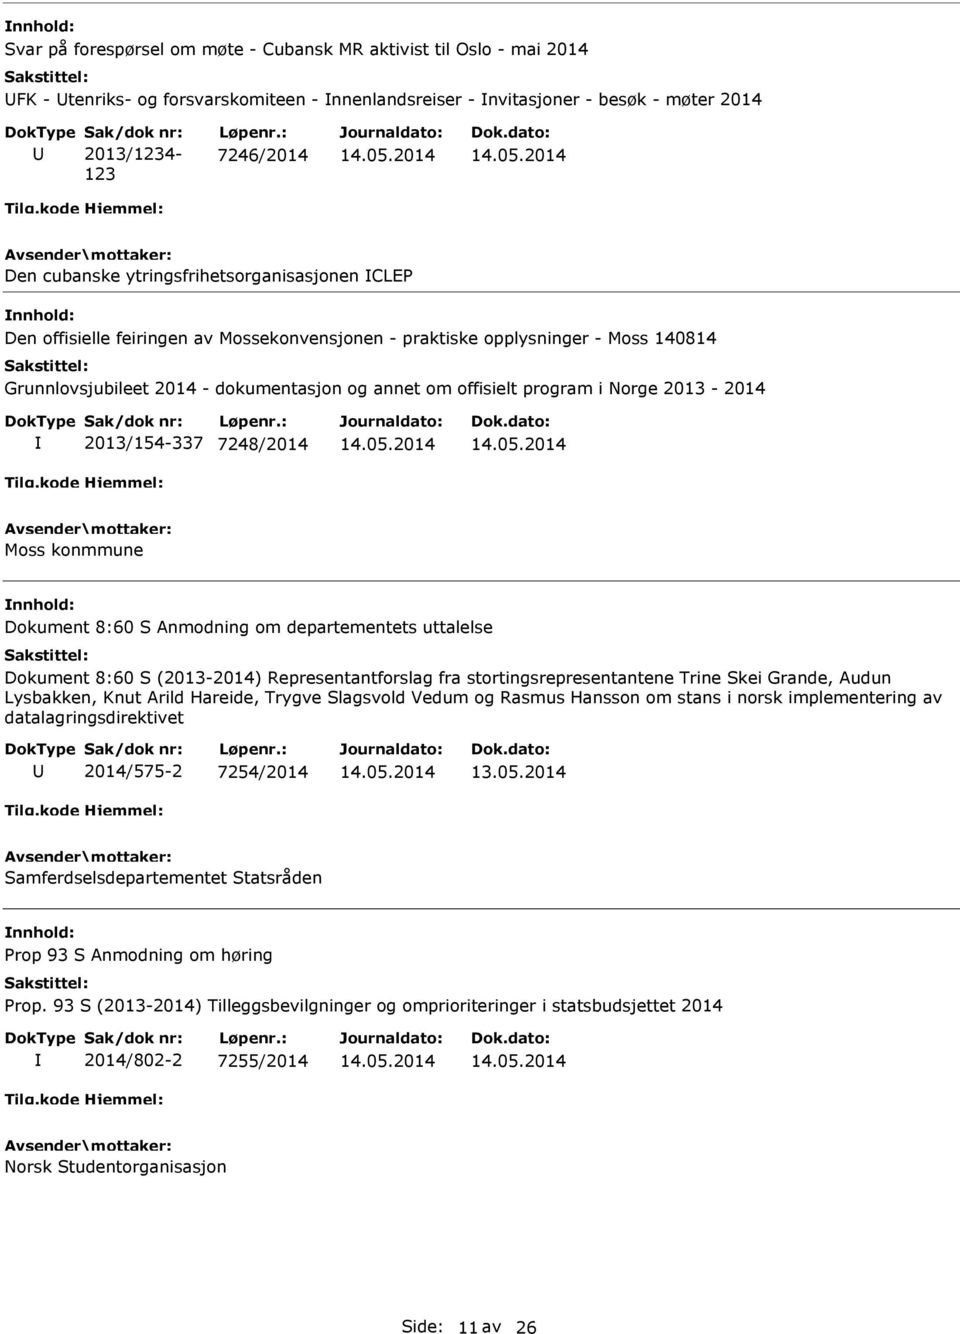 offisielt program i Norge 2013-2014 2013/154-337 7248/2014 Moss konmmune Dokument 8:60 S Anmodning om departementets uttalelse Dokument 8:60 S (2013-2014) Representantforslag fra